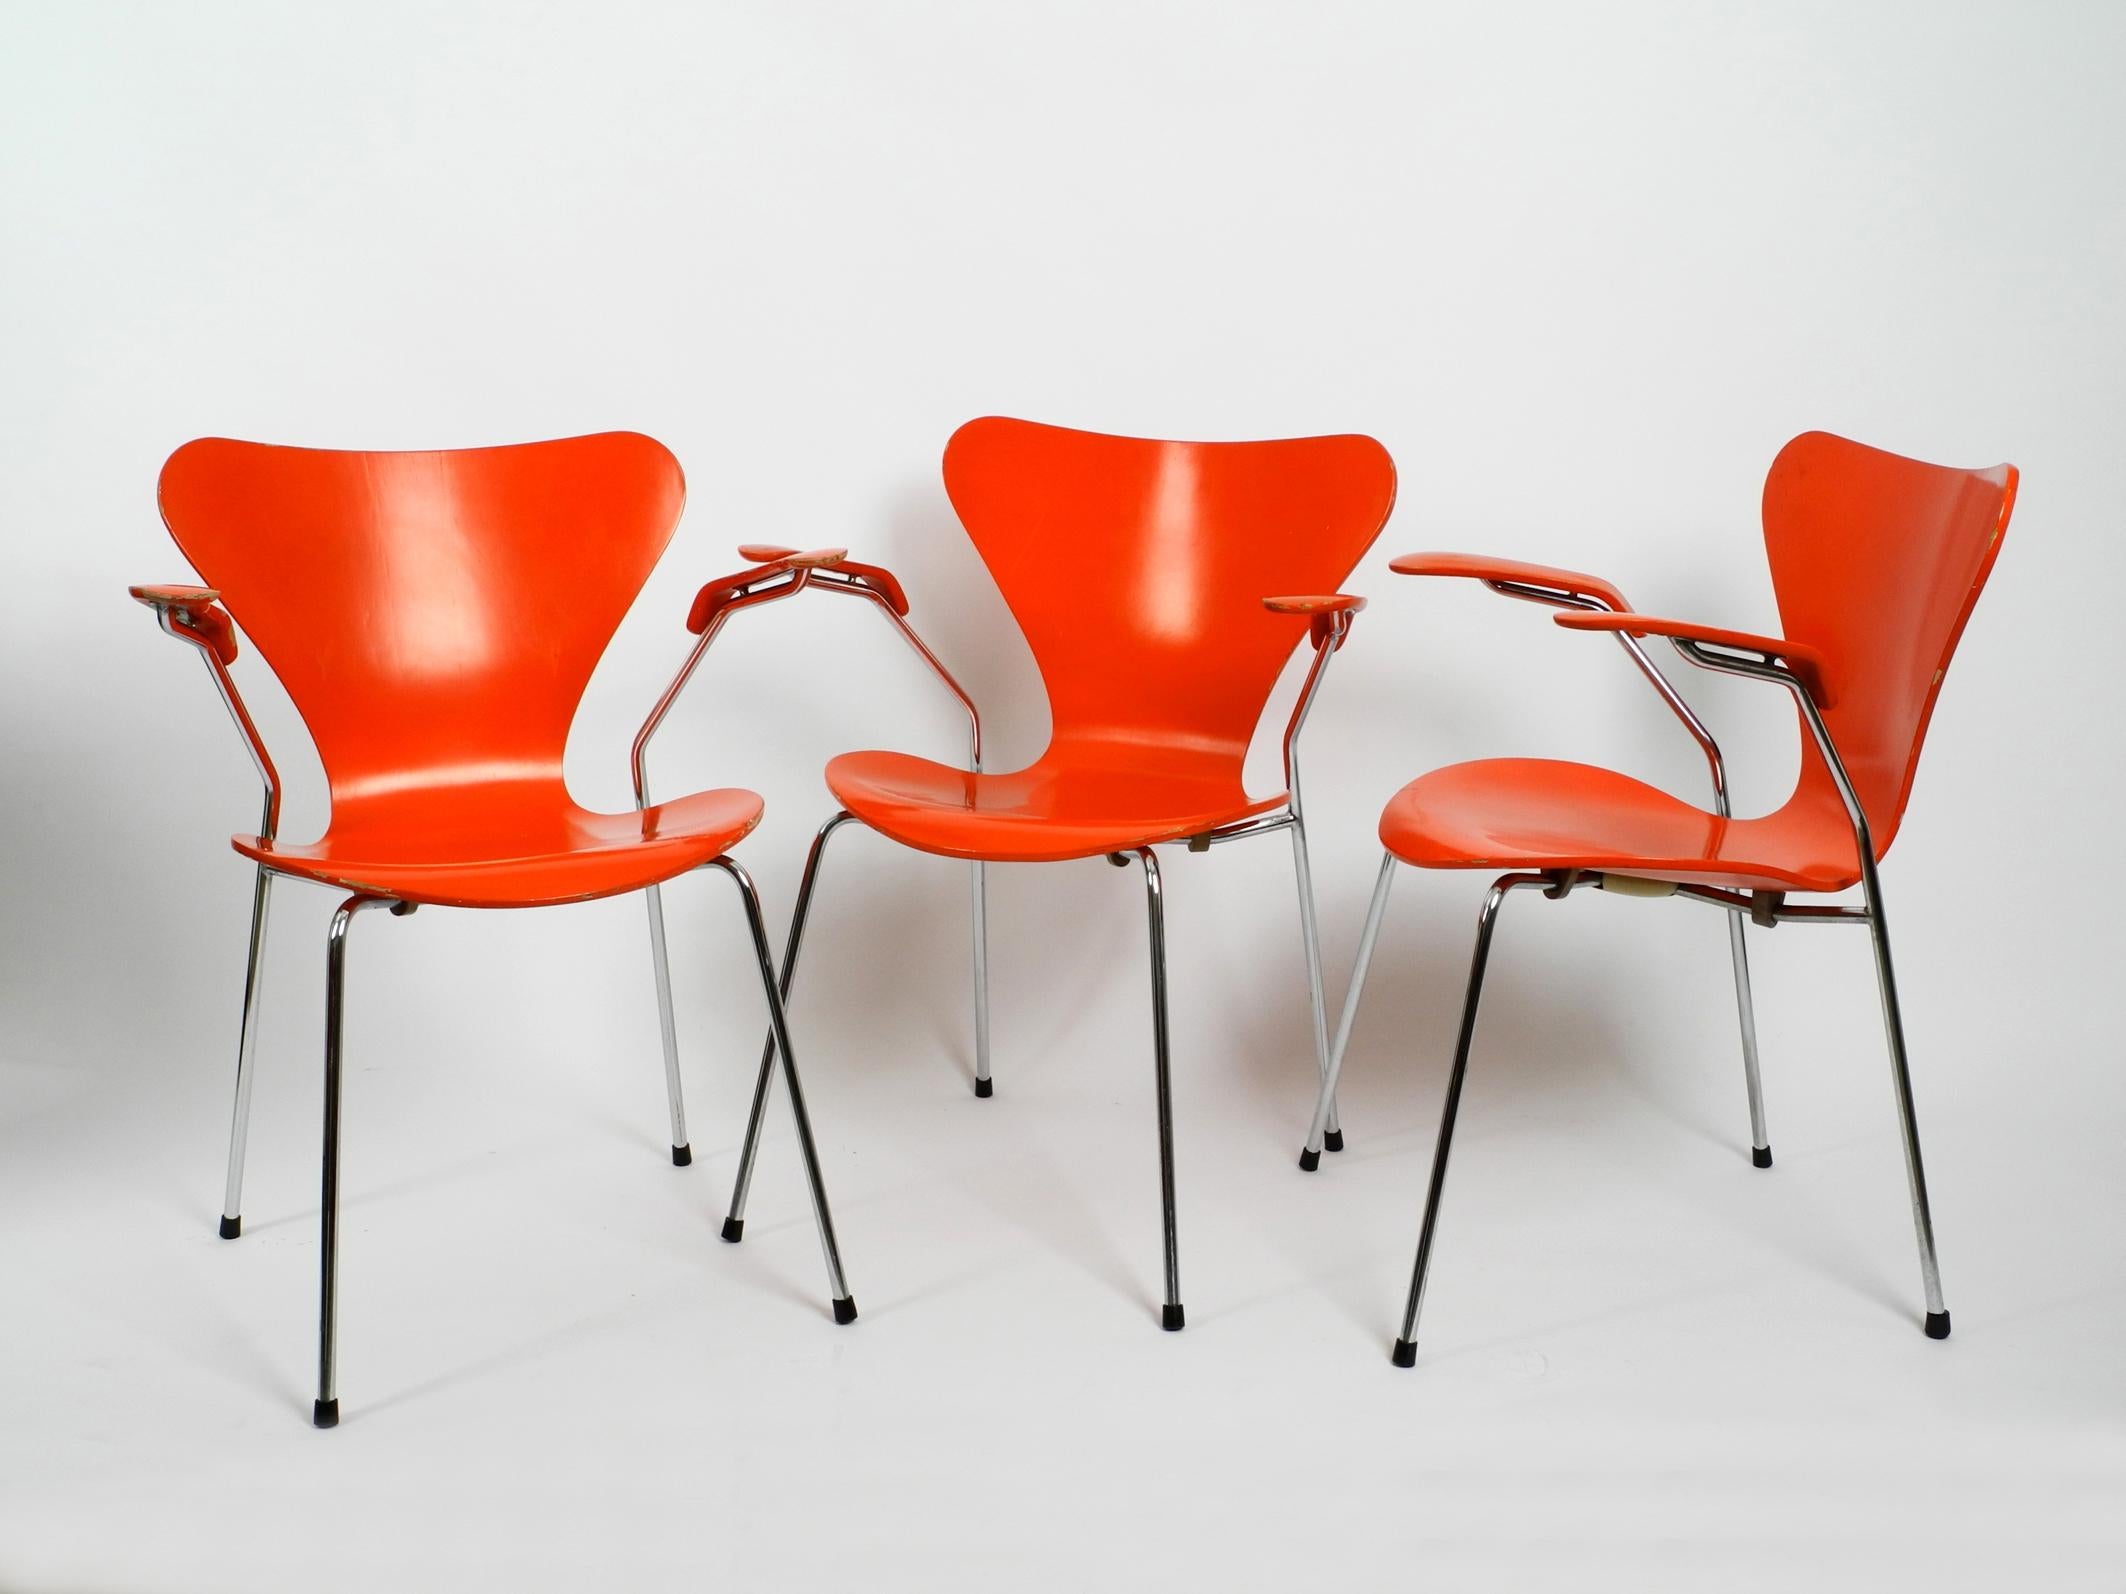 Trois fauteuils Arne Jacobsen originaux en contreplaqué stratifié Mod. 3207.
cadre en tube d'acier chromé.
Très rare avec la peinture originale en orange de 1982. 
Fabriqué par Fritz Hansen Danemark. Avec l'étiquette originale sur le fond.
Aucun